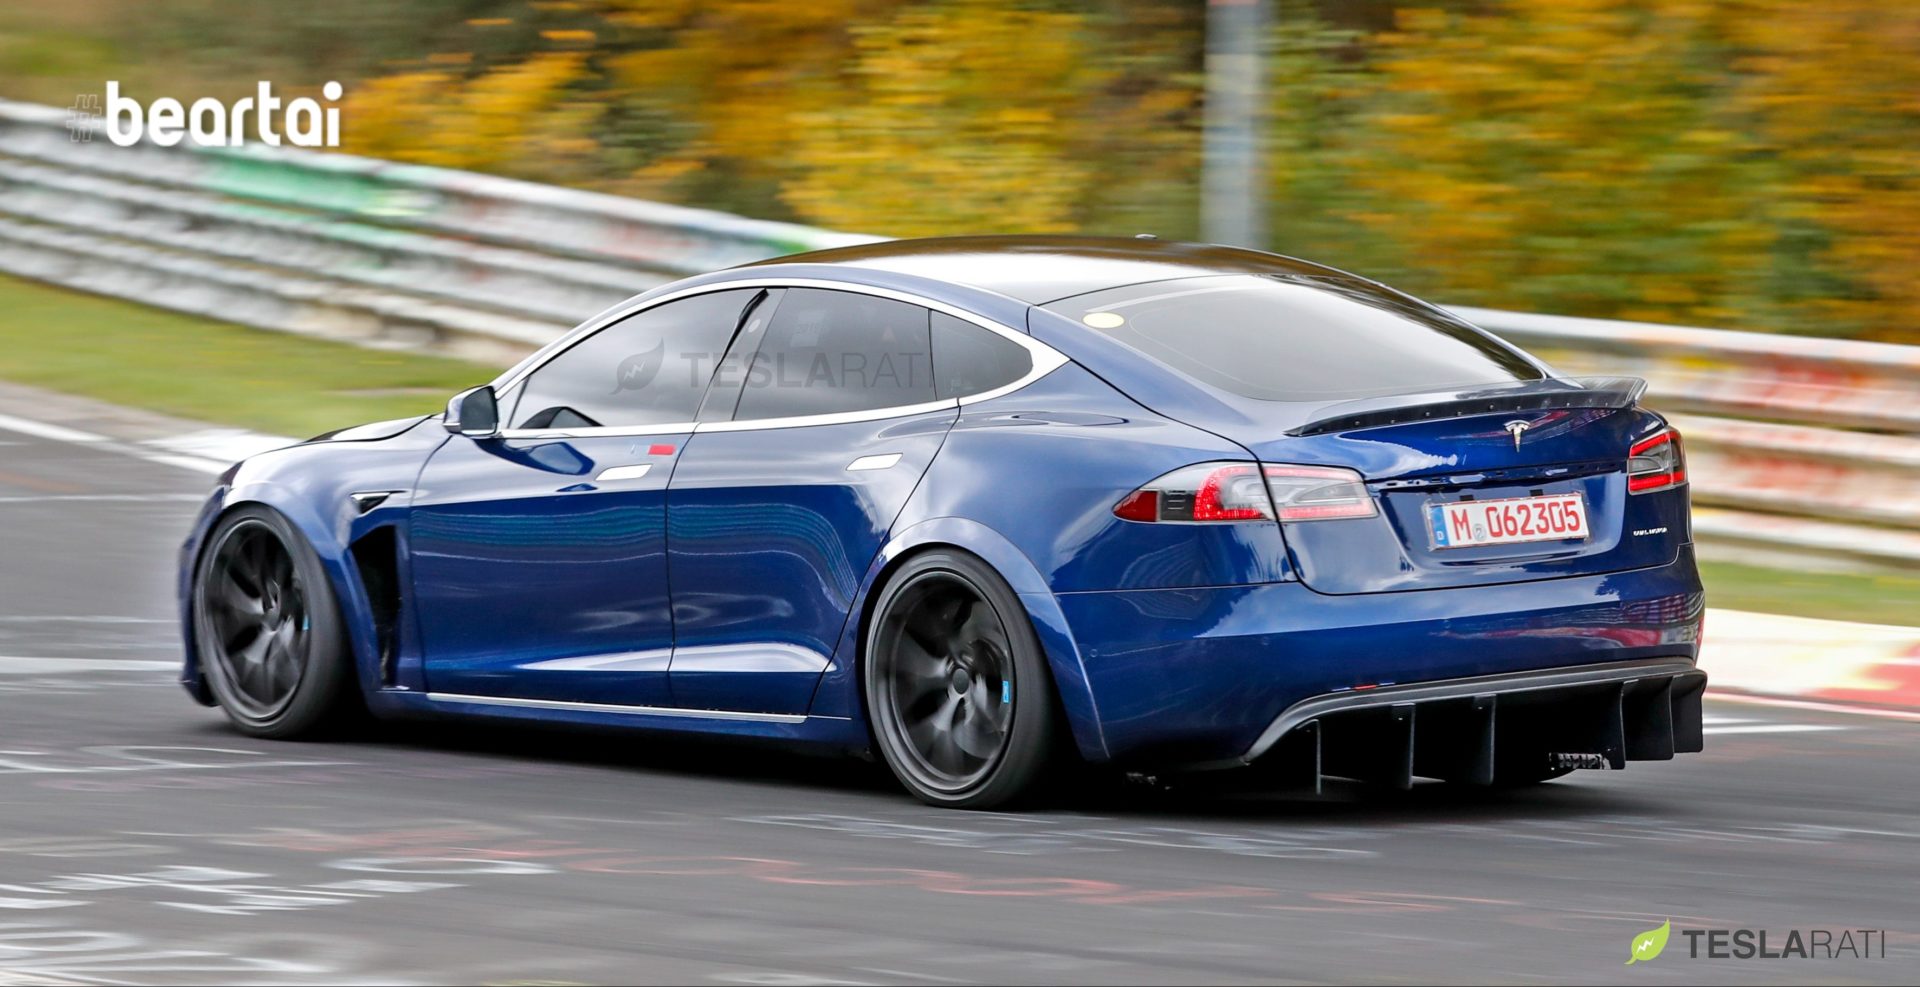 ข่าวรั่ว! Tesla ปรับปรุงรถยนต์ Model S, X และอัปเดตซอฟต์แวร์ใหม่อีกด้วย